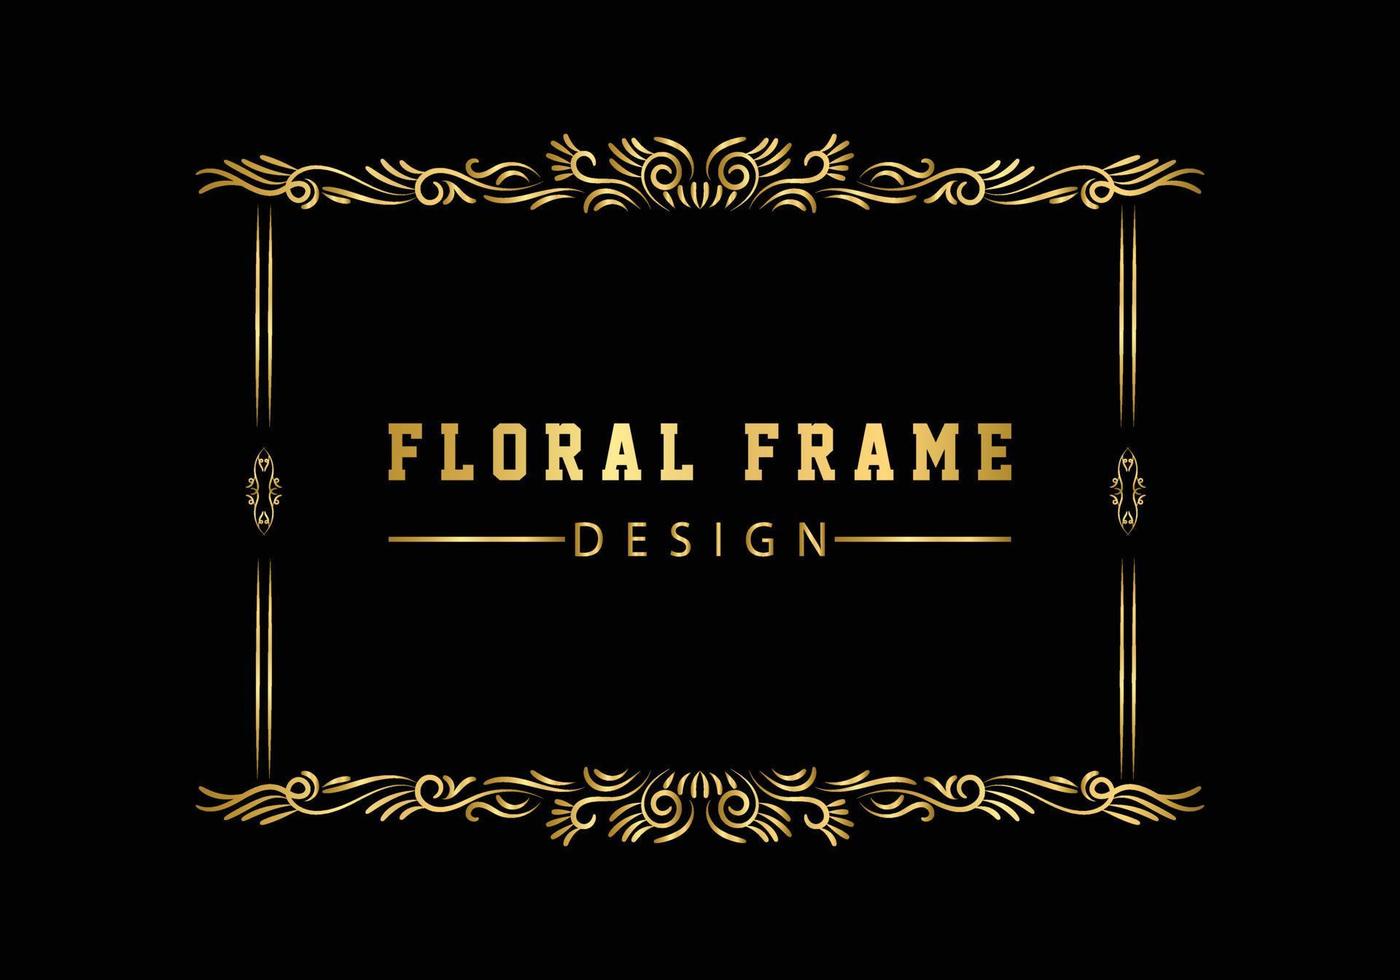 cadre rond décoratif doré pour la conception avec ornement floral. un modèle pour l'impression de cartes postales. vecteur